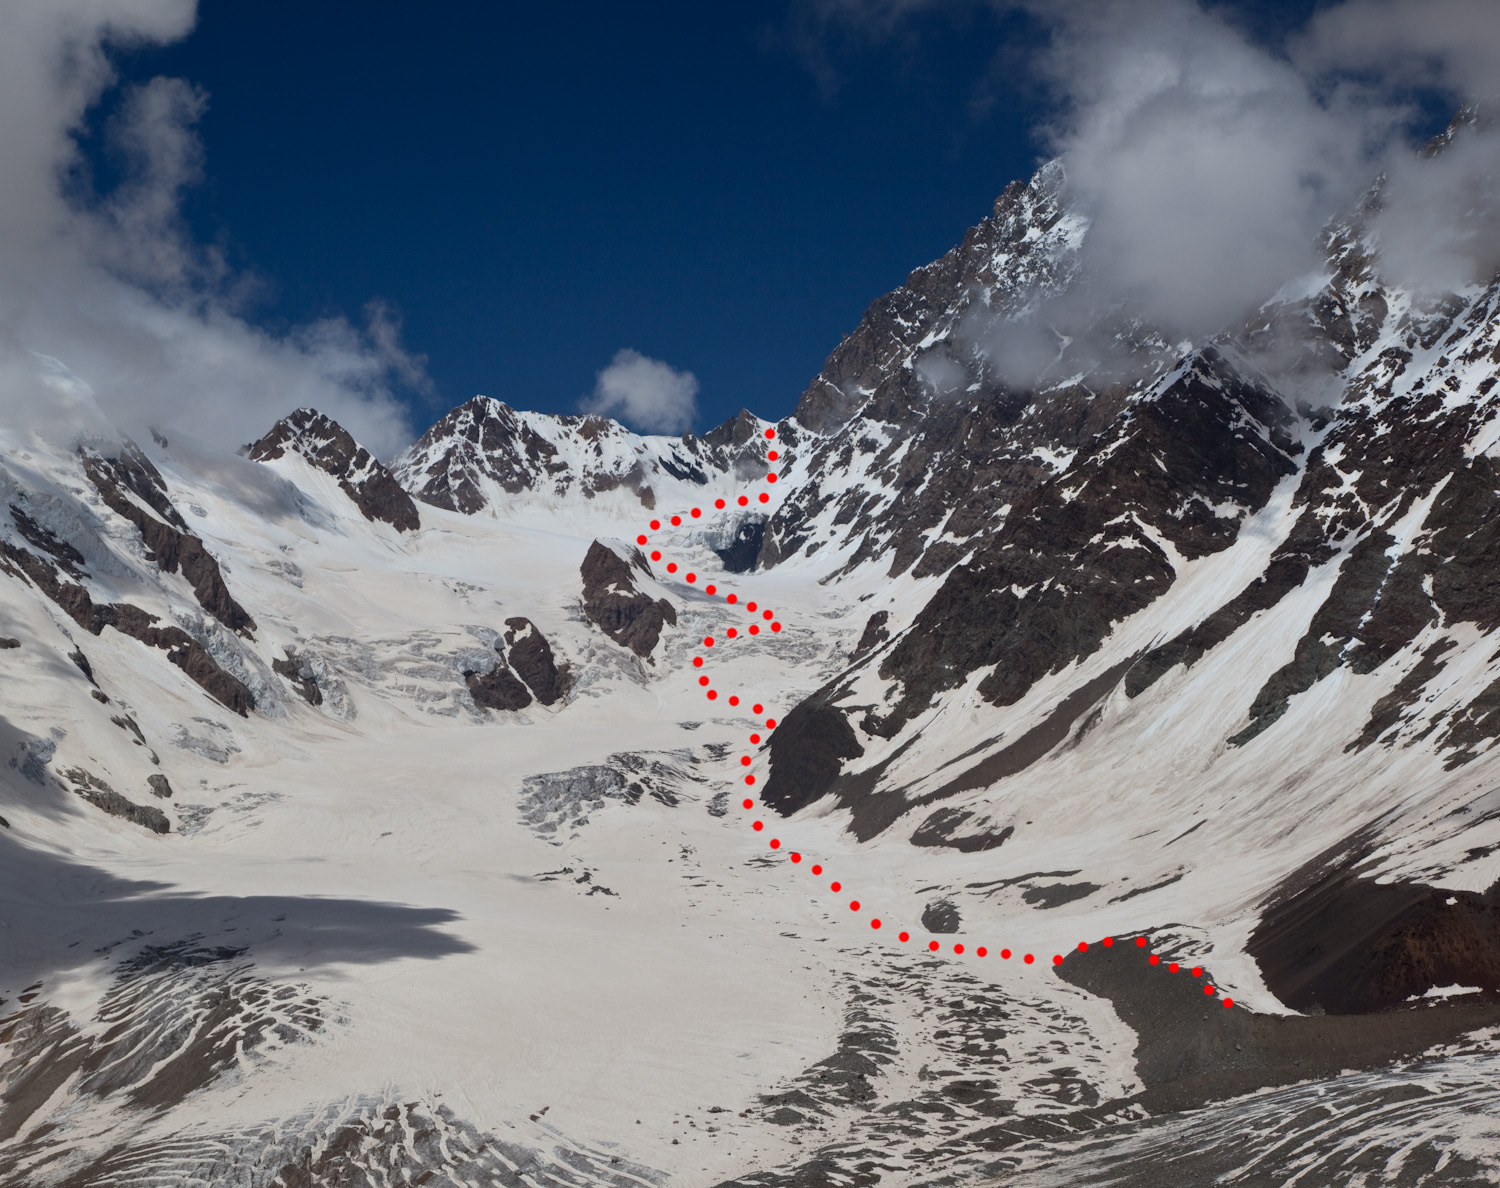 Ледник Крумкол. Отмечен путь движения к ночевкам и далее по леднику в направлении перевала Селла.